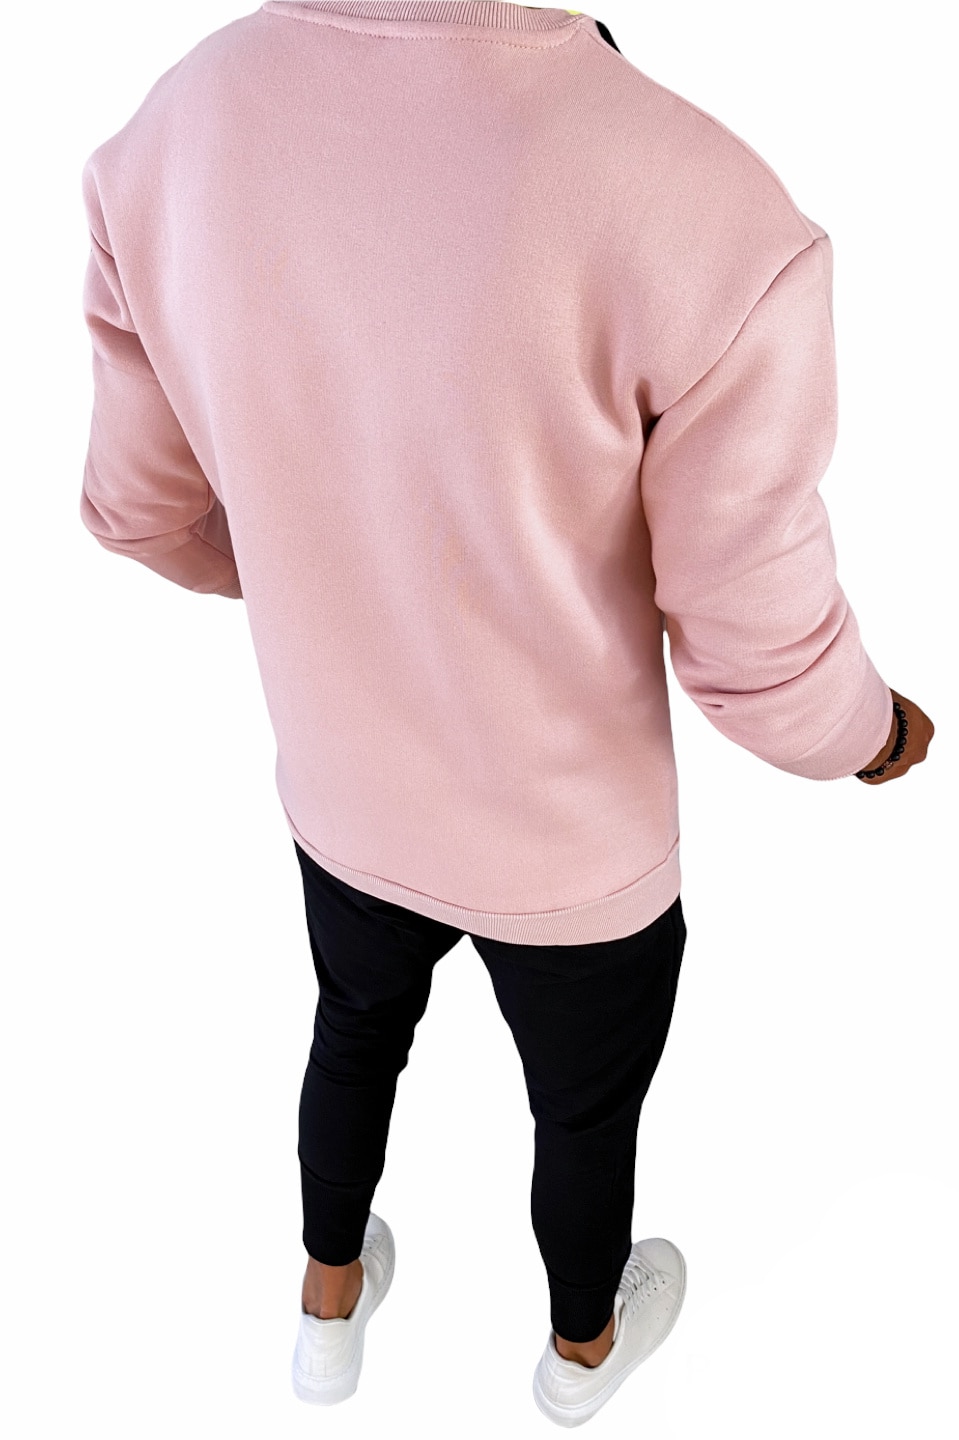 Bluza barbati, cu imprimeu, K409, roz, XL eMAG.ro